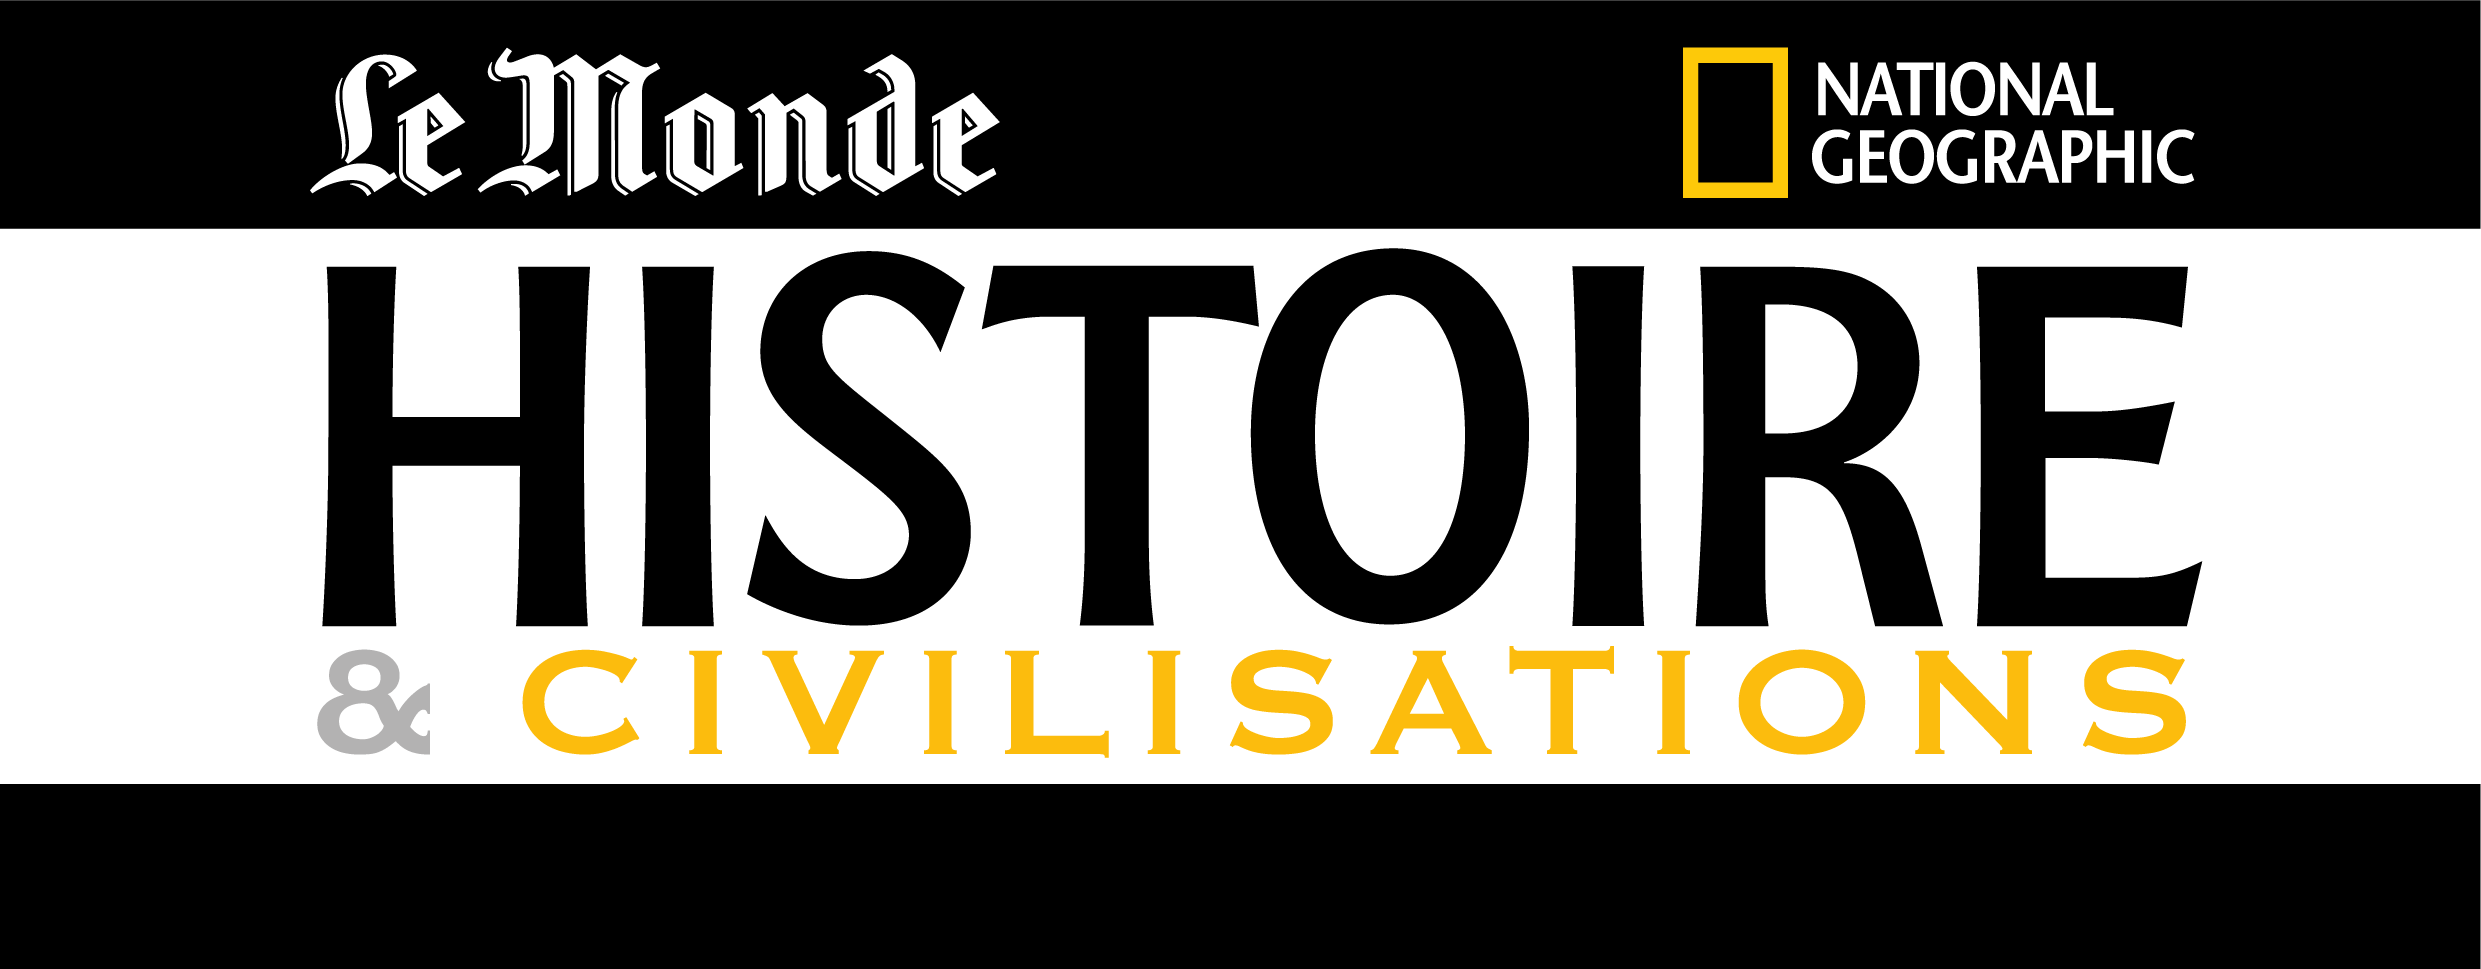 Le Monde Histoire & Civilisations